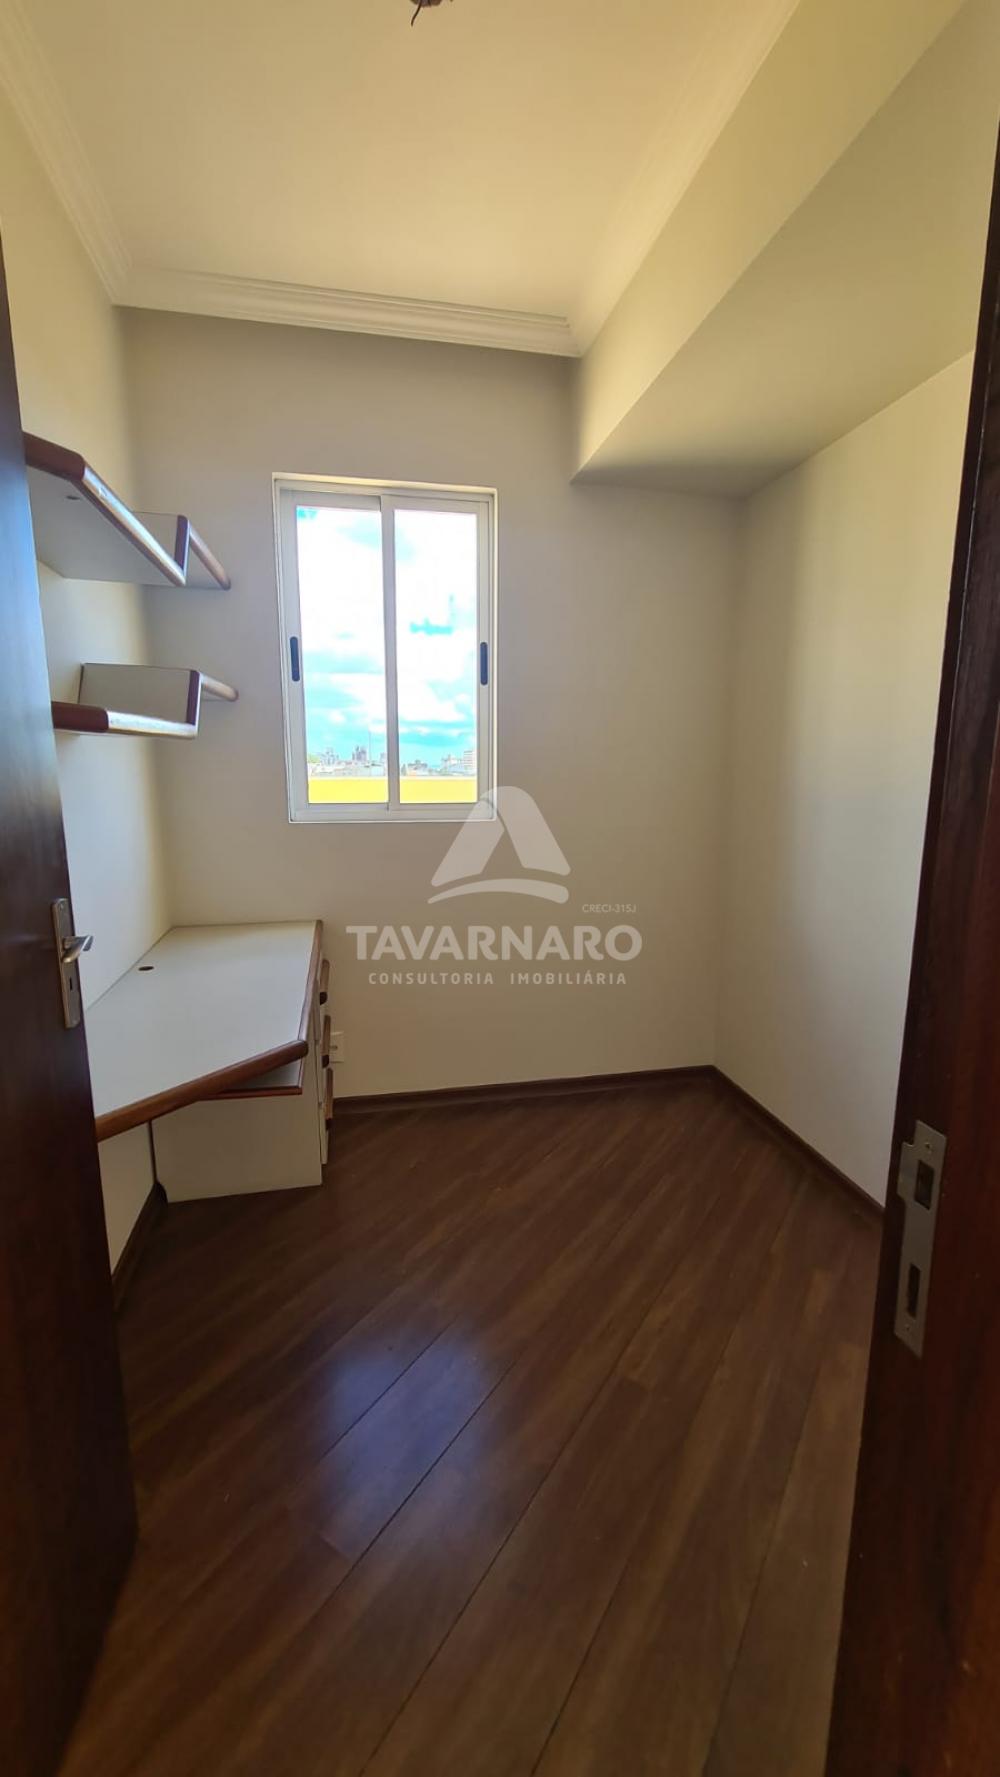 Comprar Apartamento / Cobertura em Ponta Grossa R$ 550.000,00 - Foto 3